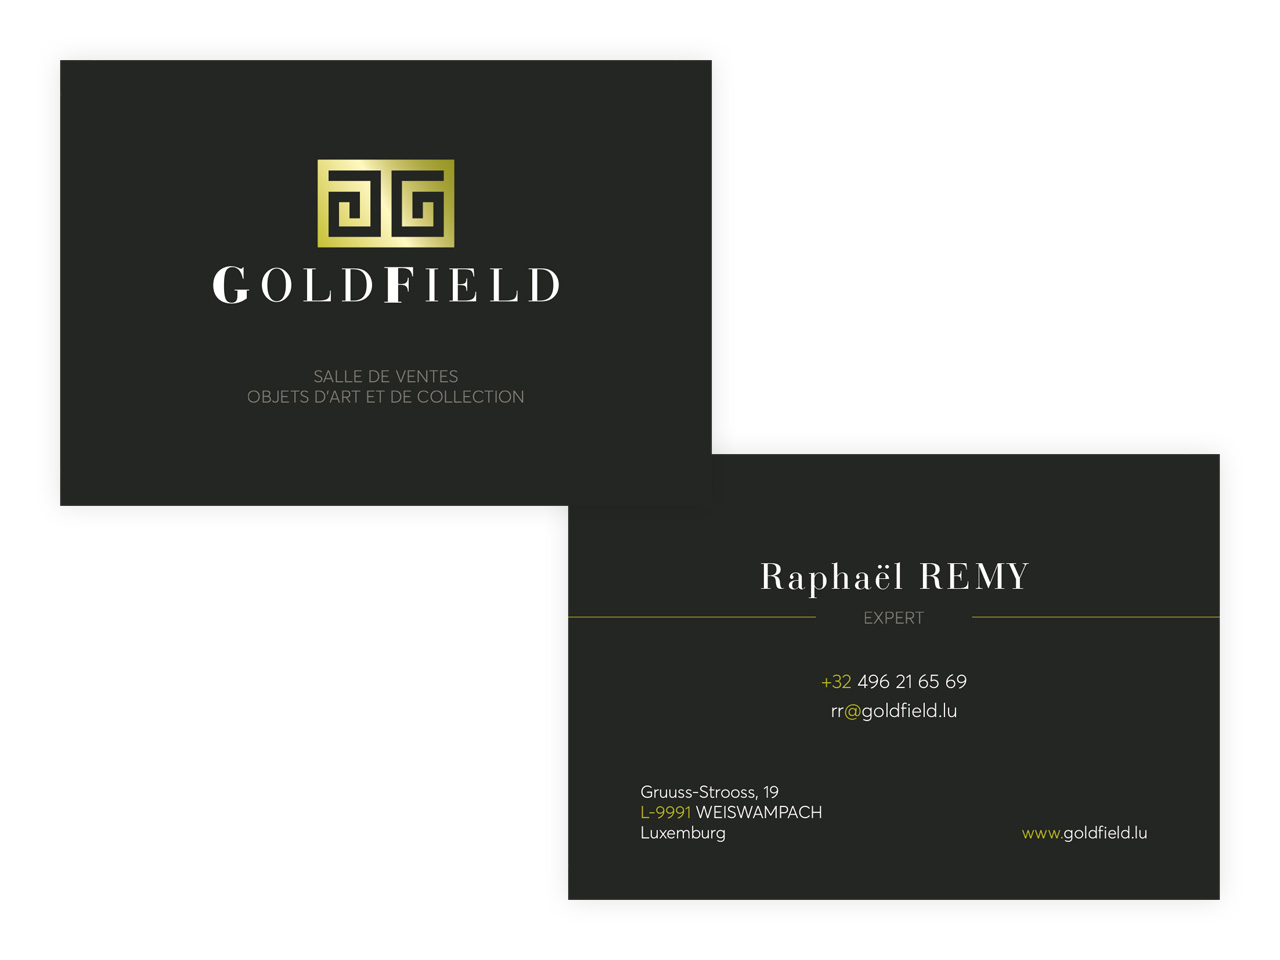 GoldField Auction - Carte de visite